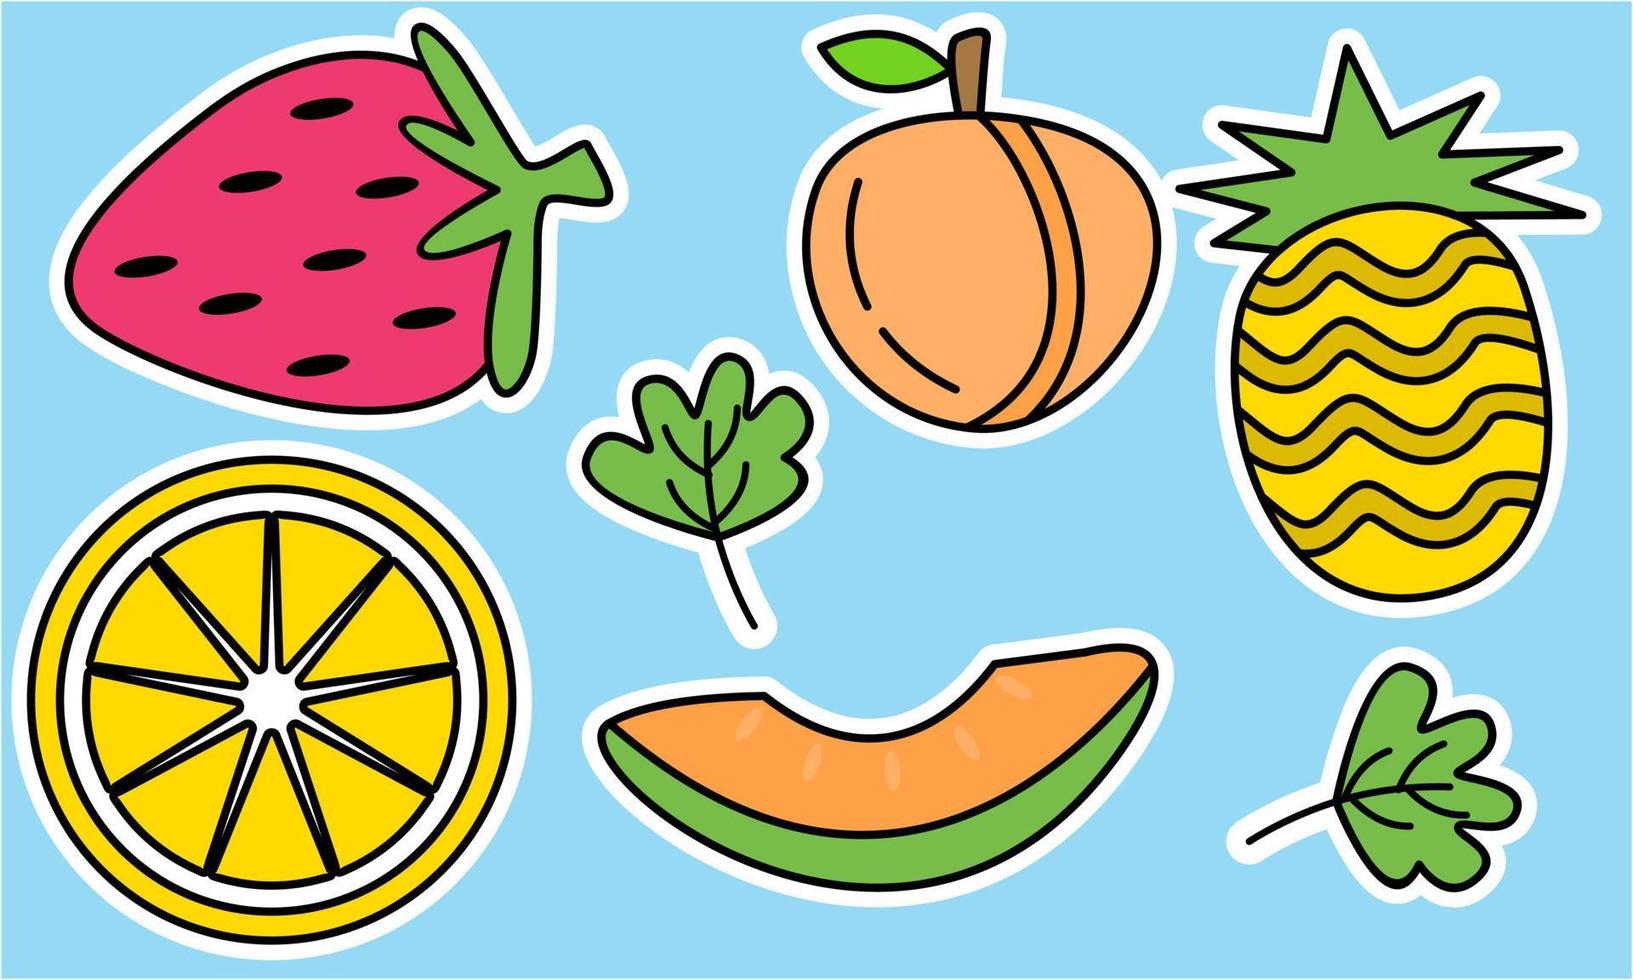 scarabocchiare i frutti. frutta tropicale naturale, frutta biologica o cibo vegetariano. icone vettoriali isolate